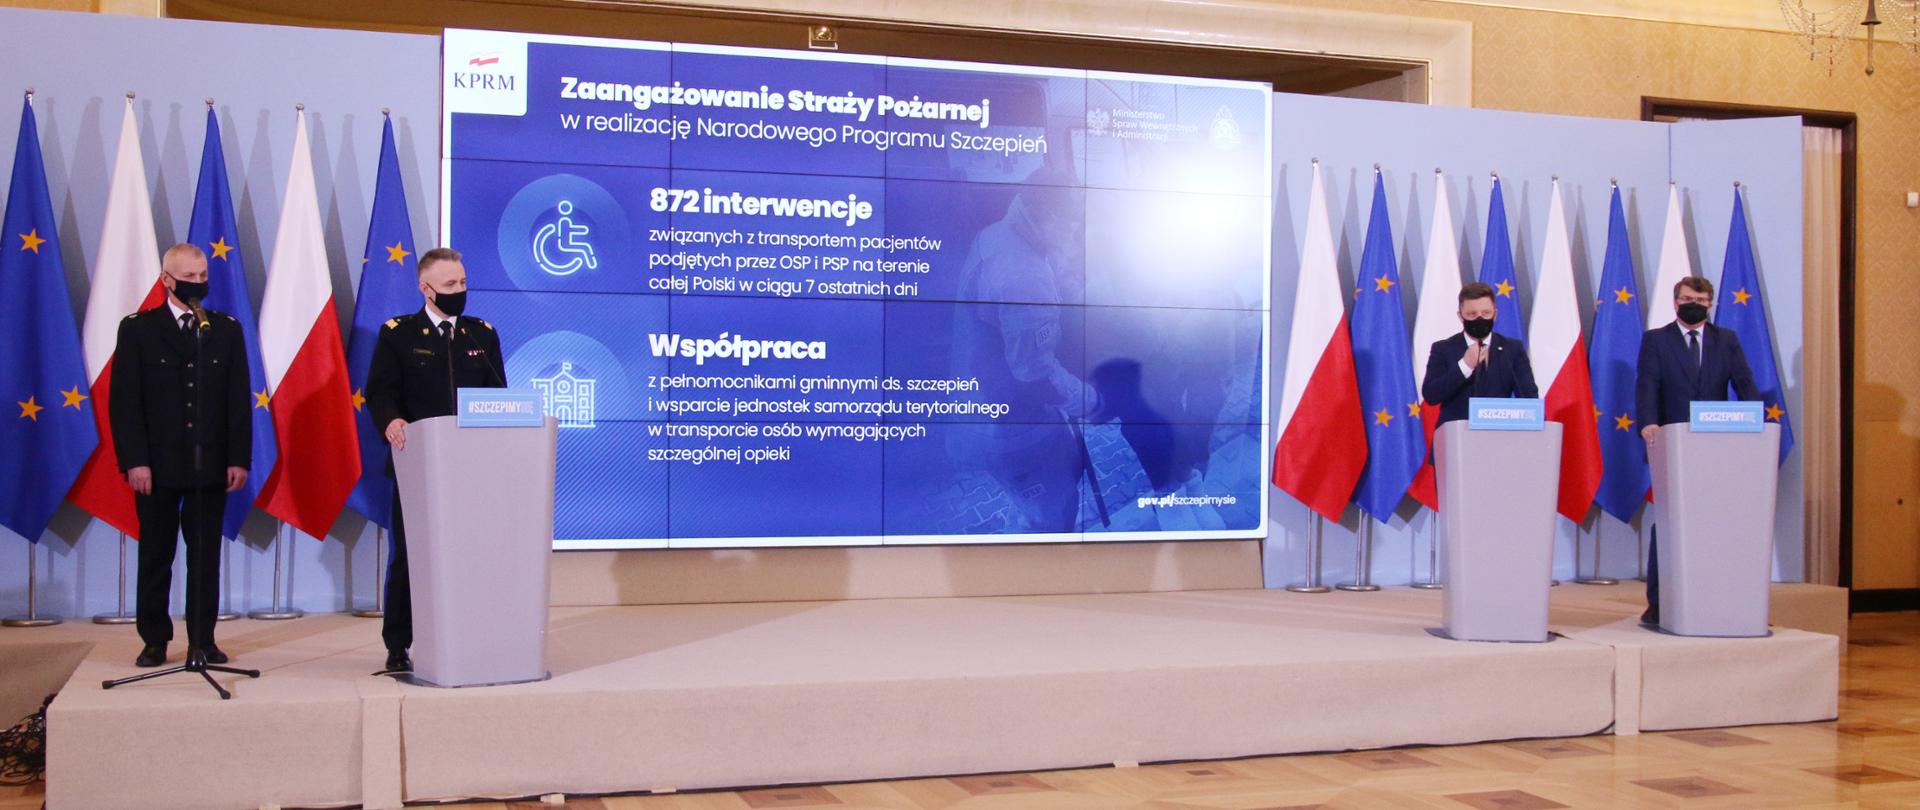 Komendant Główny PSP wraz z przedstawicielami rządu na tle bannera akcji Narodowego Programu Szczepień.